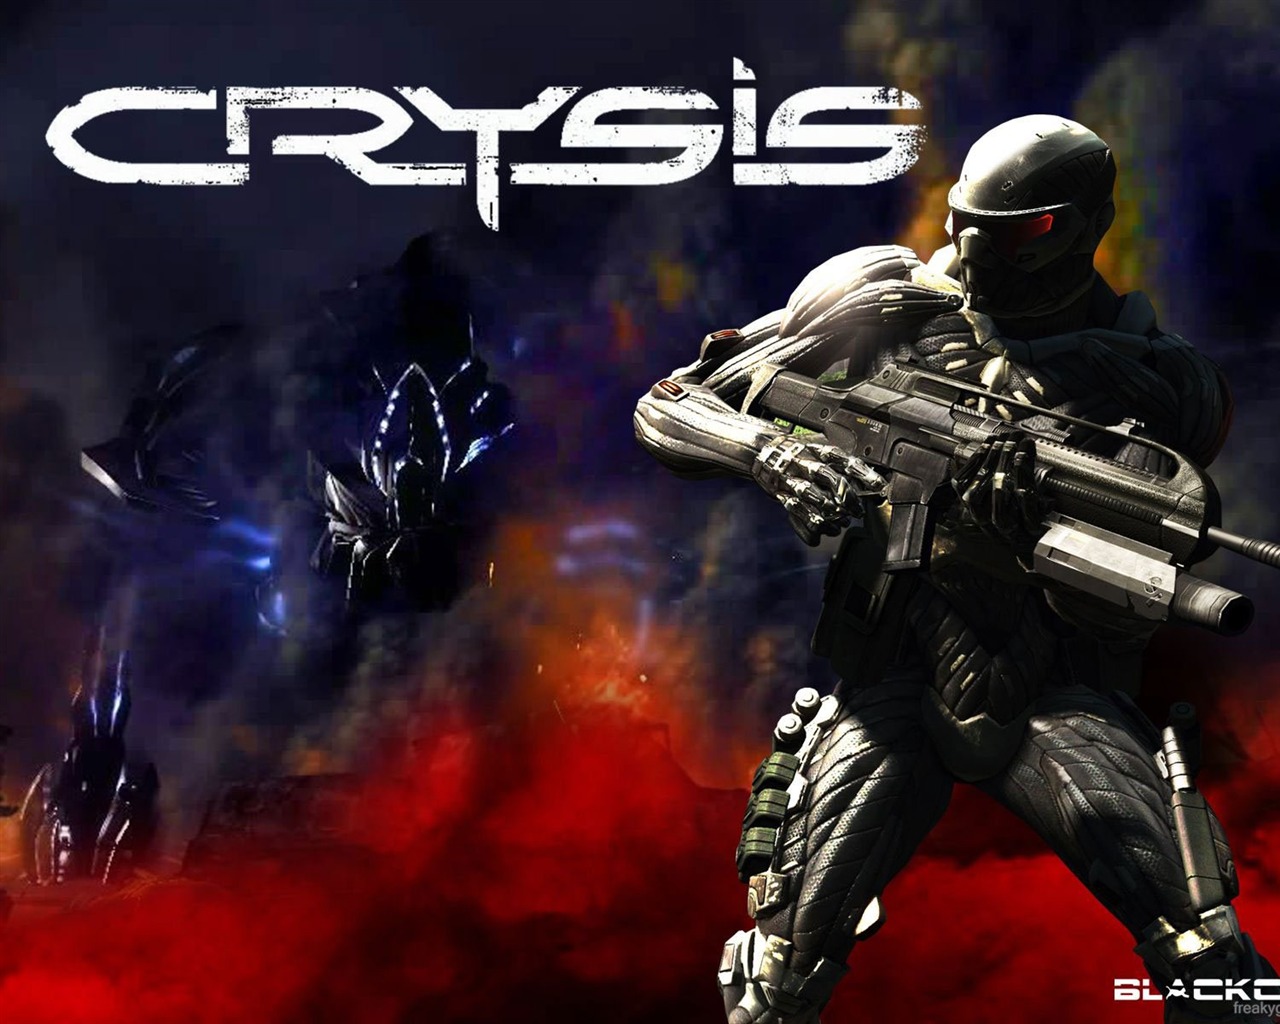  Crysisの壁紙(2) #6 - 1280x1024